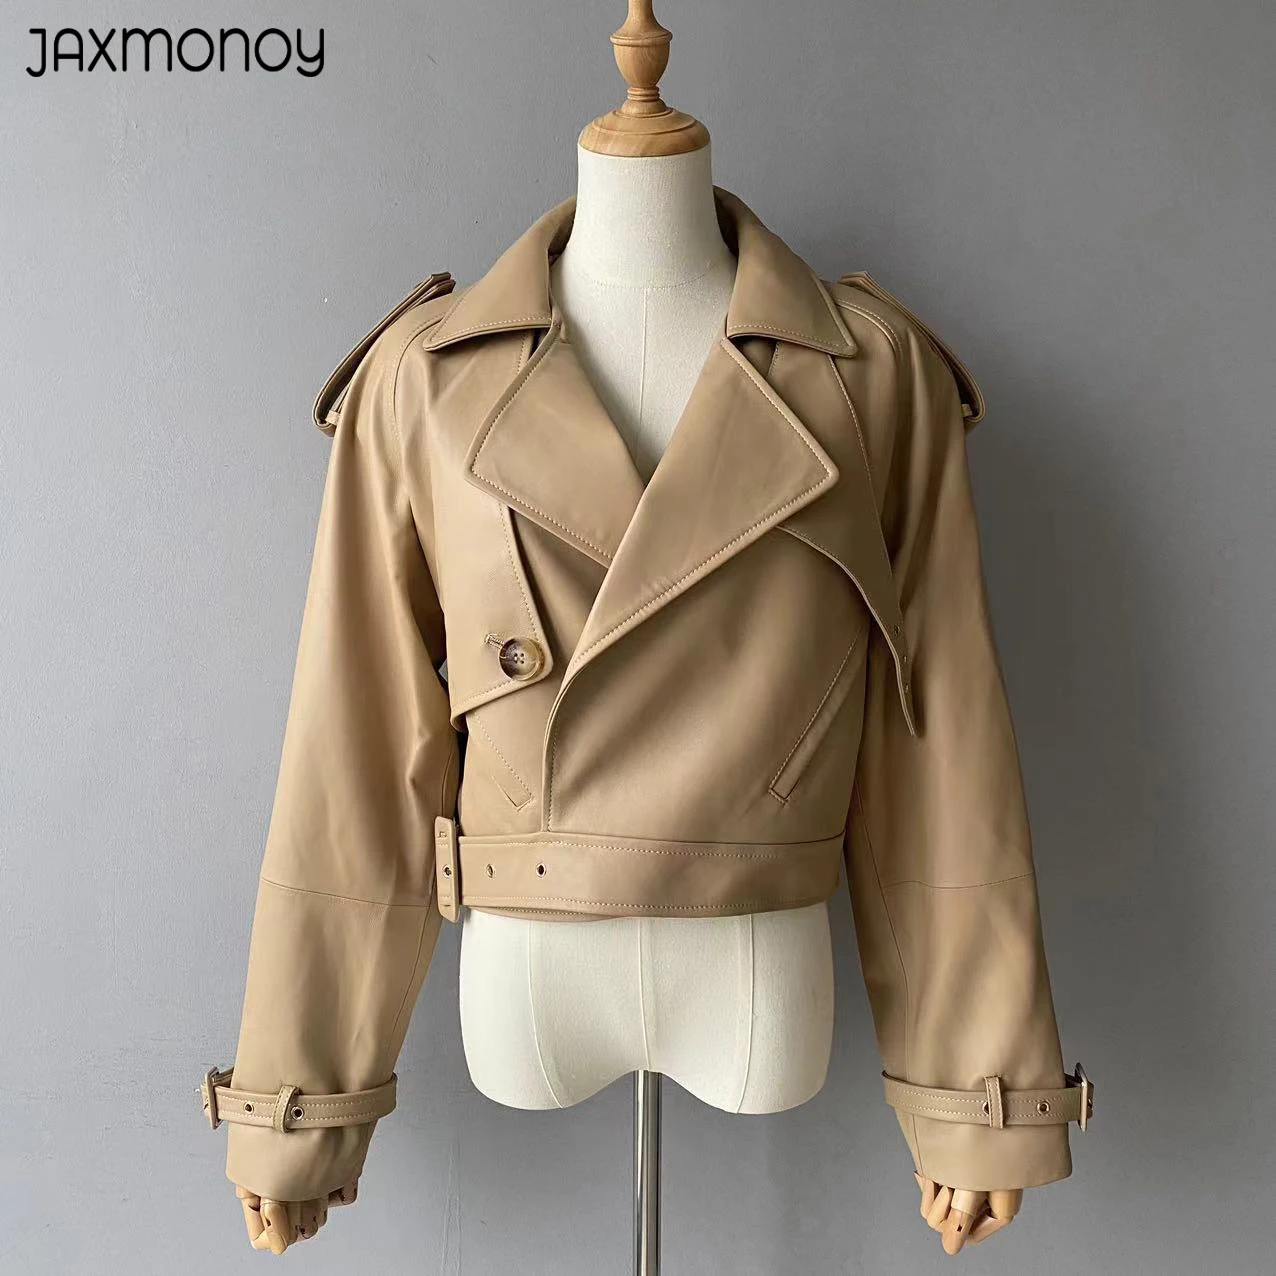 

Jaxmonoy Women's Real Leather Jacket Spring Autumn Fashion Short Style Genuine Sheepskin Coat Ladies Moto Biker Jacket New Style